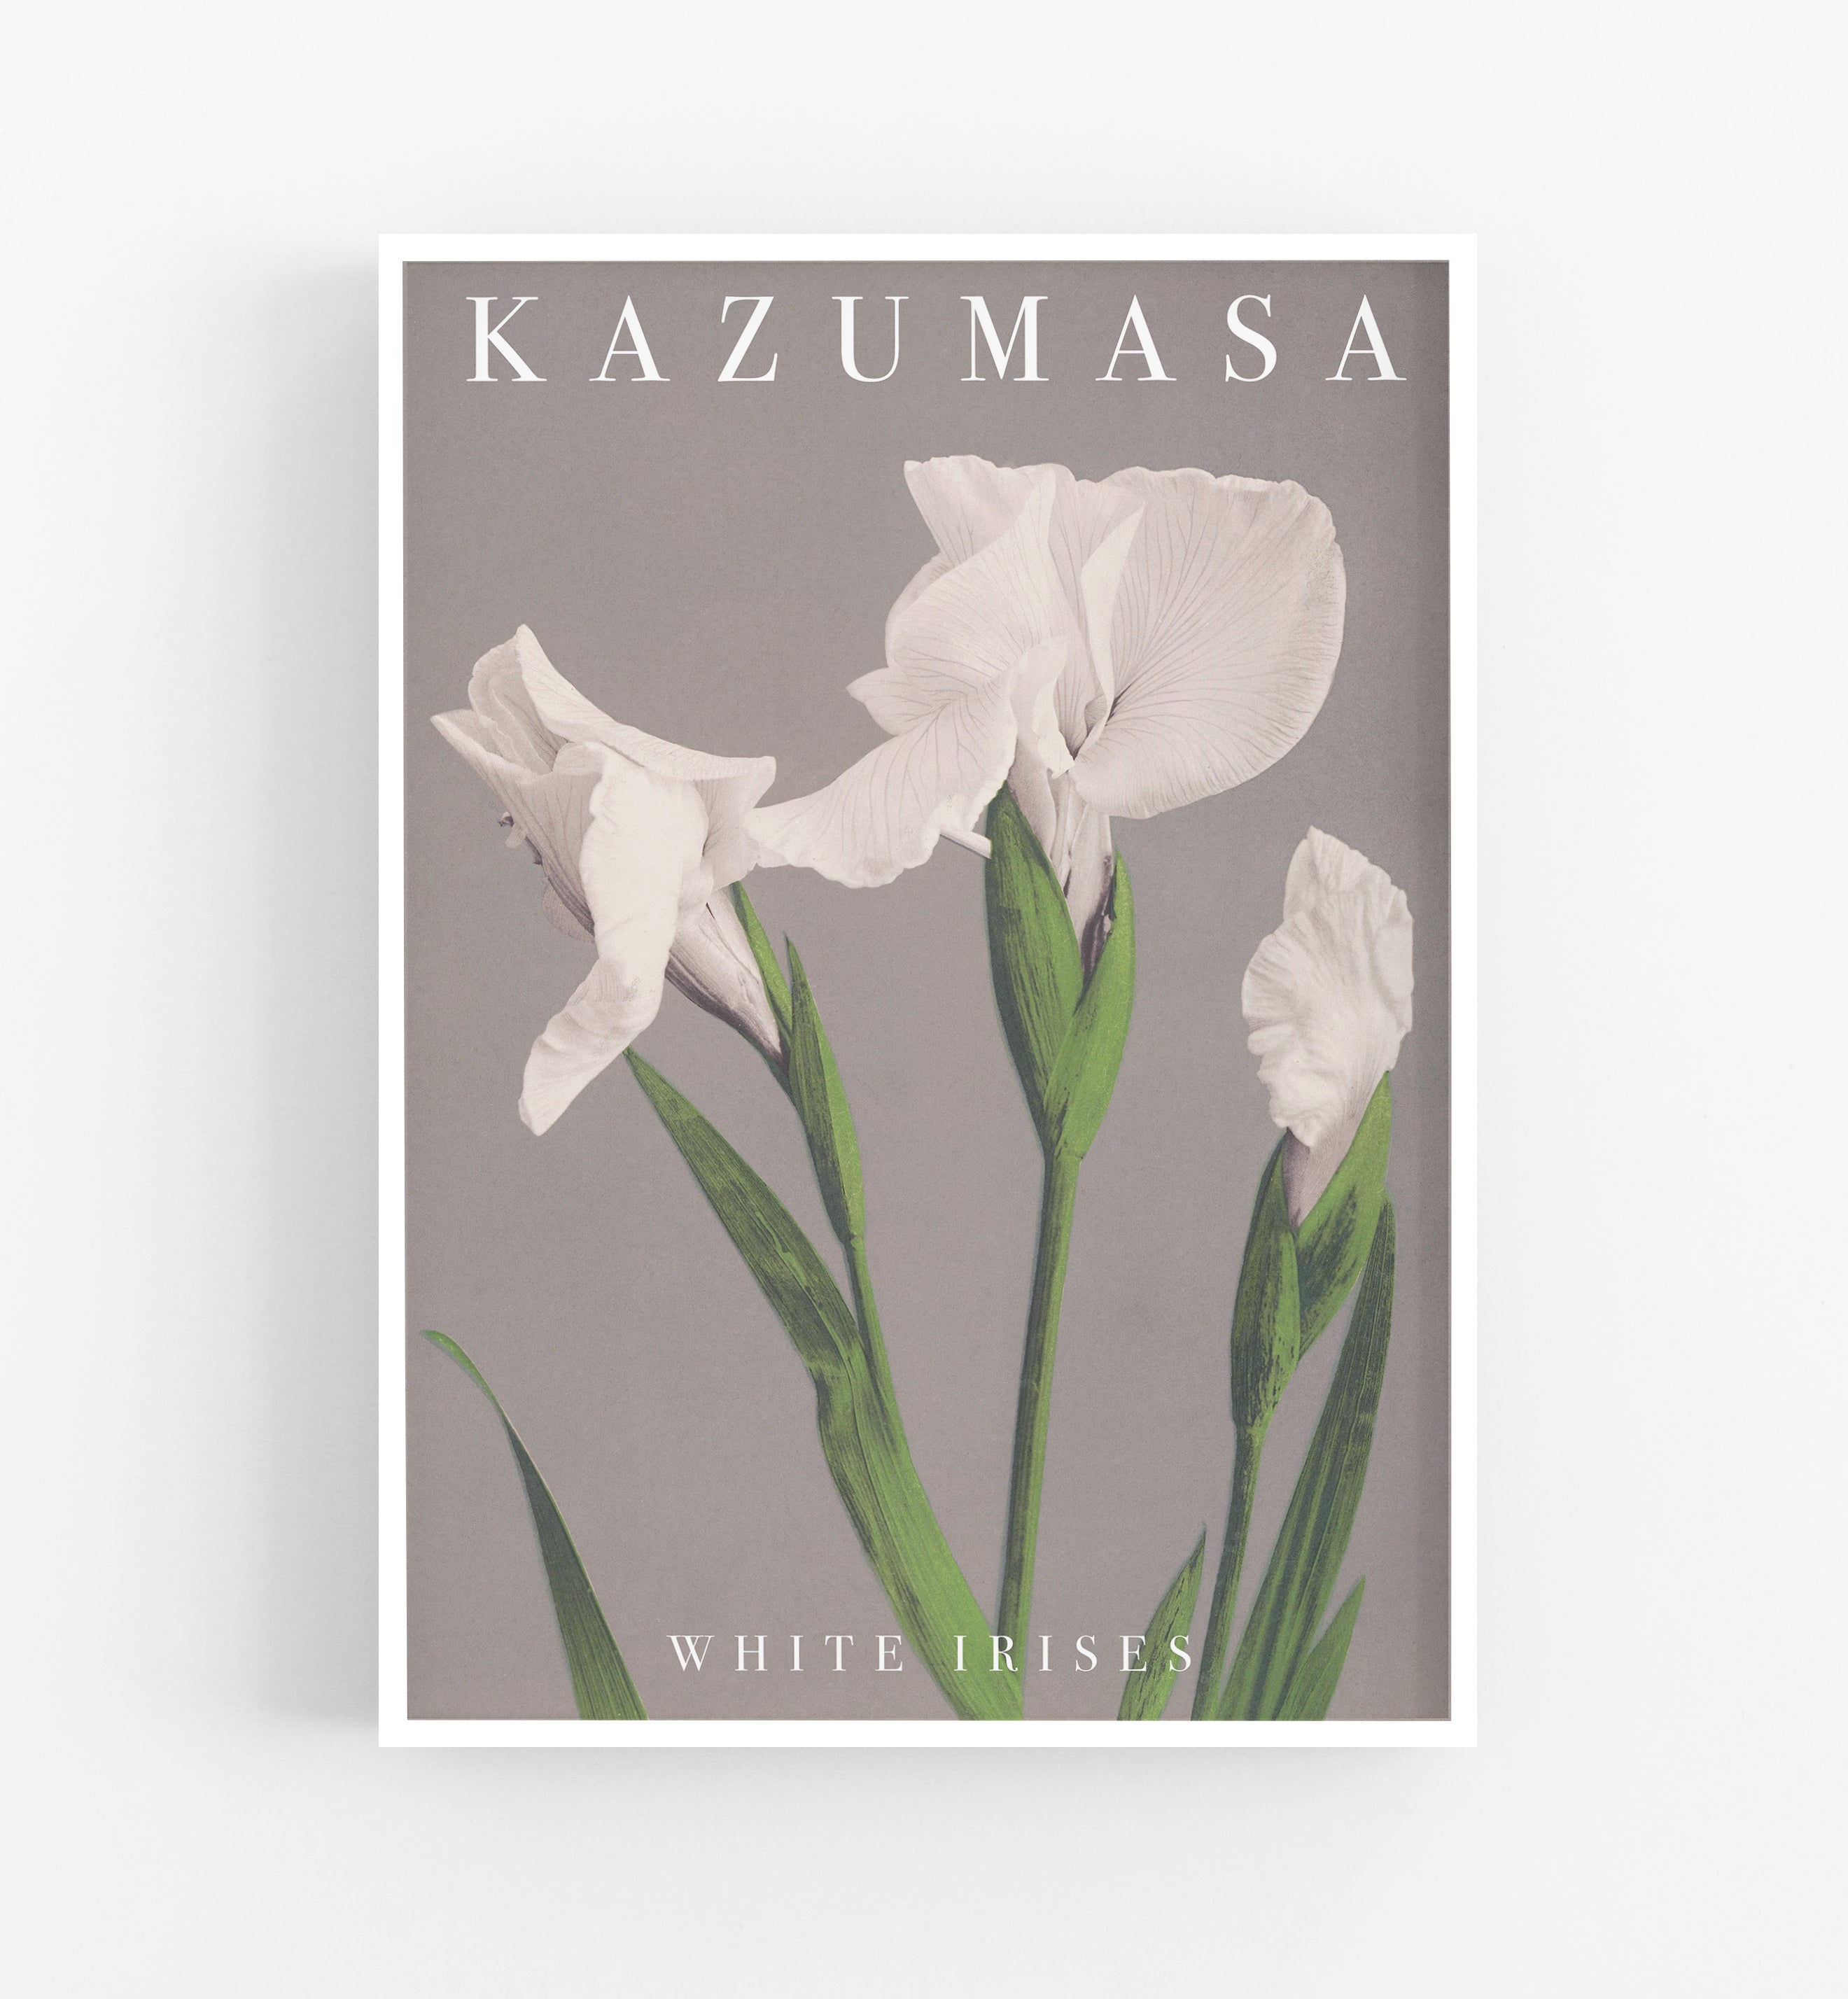 Kazumasa White Irises